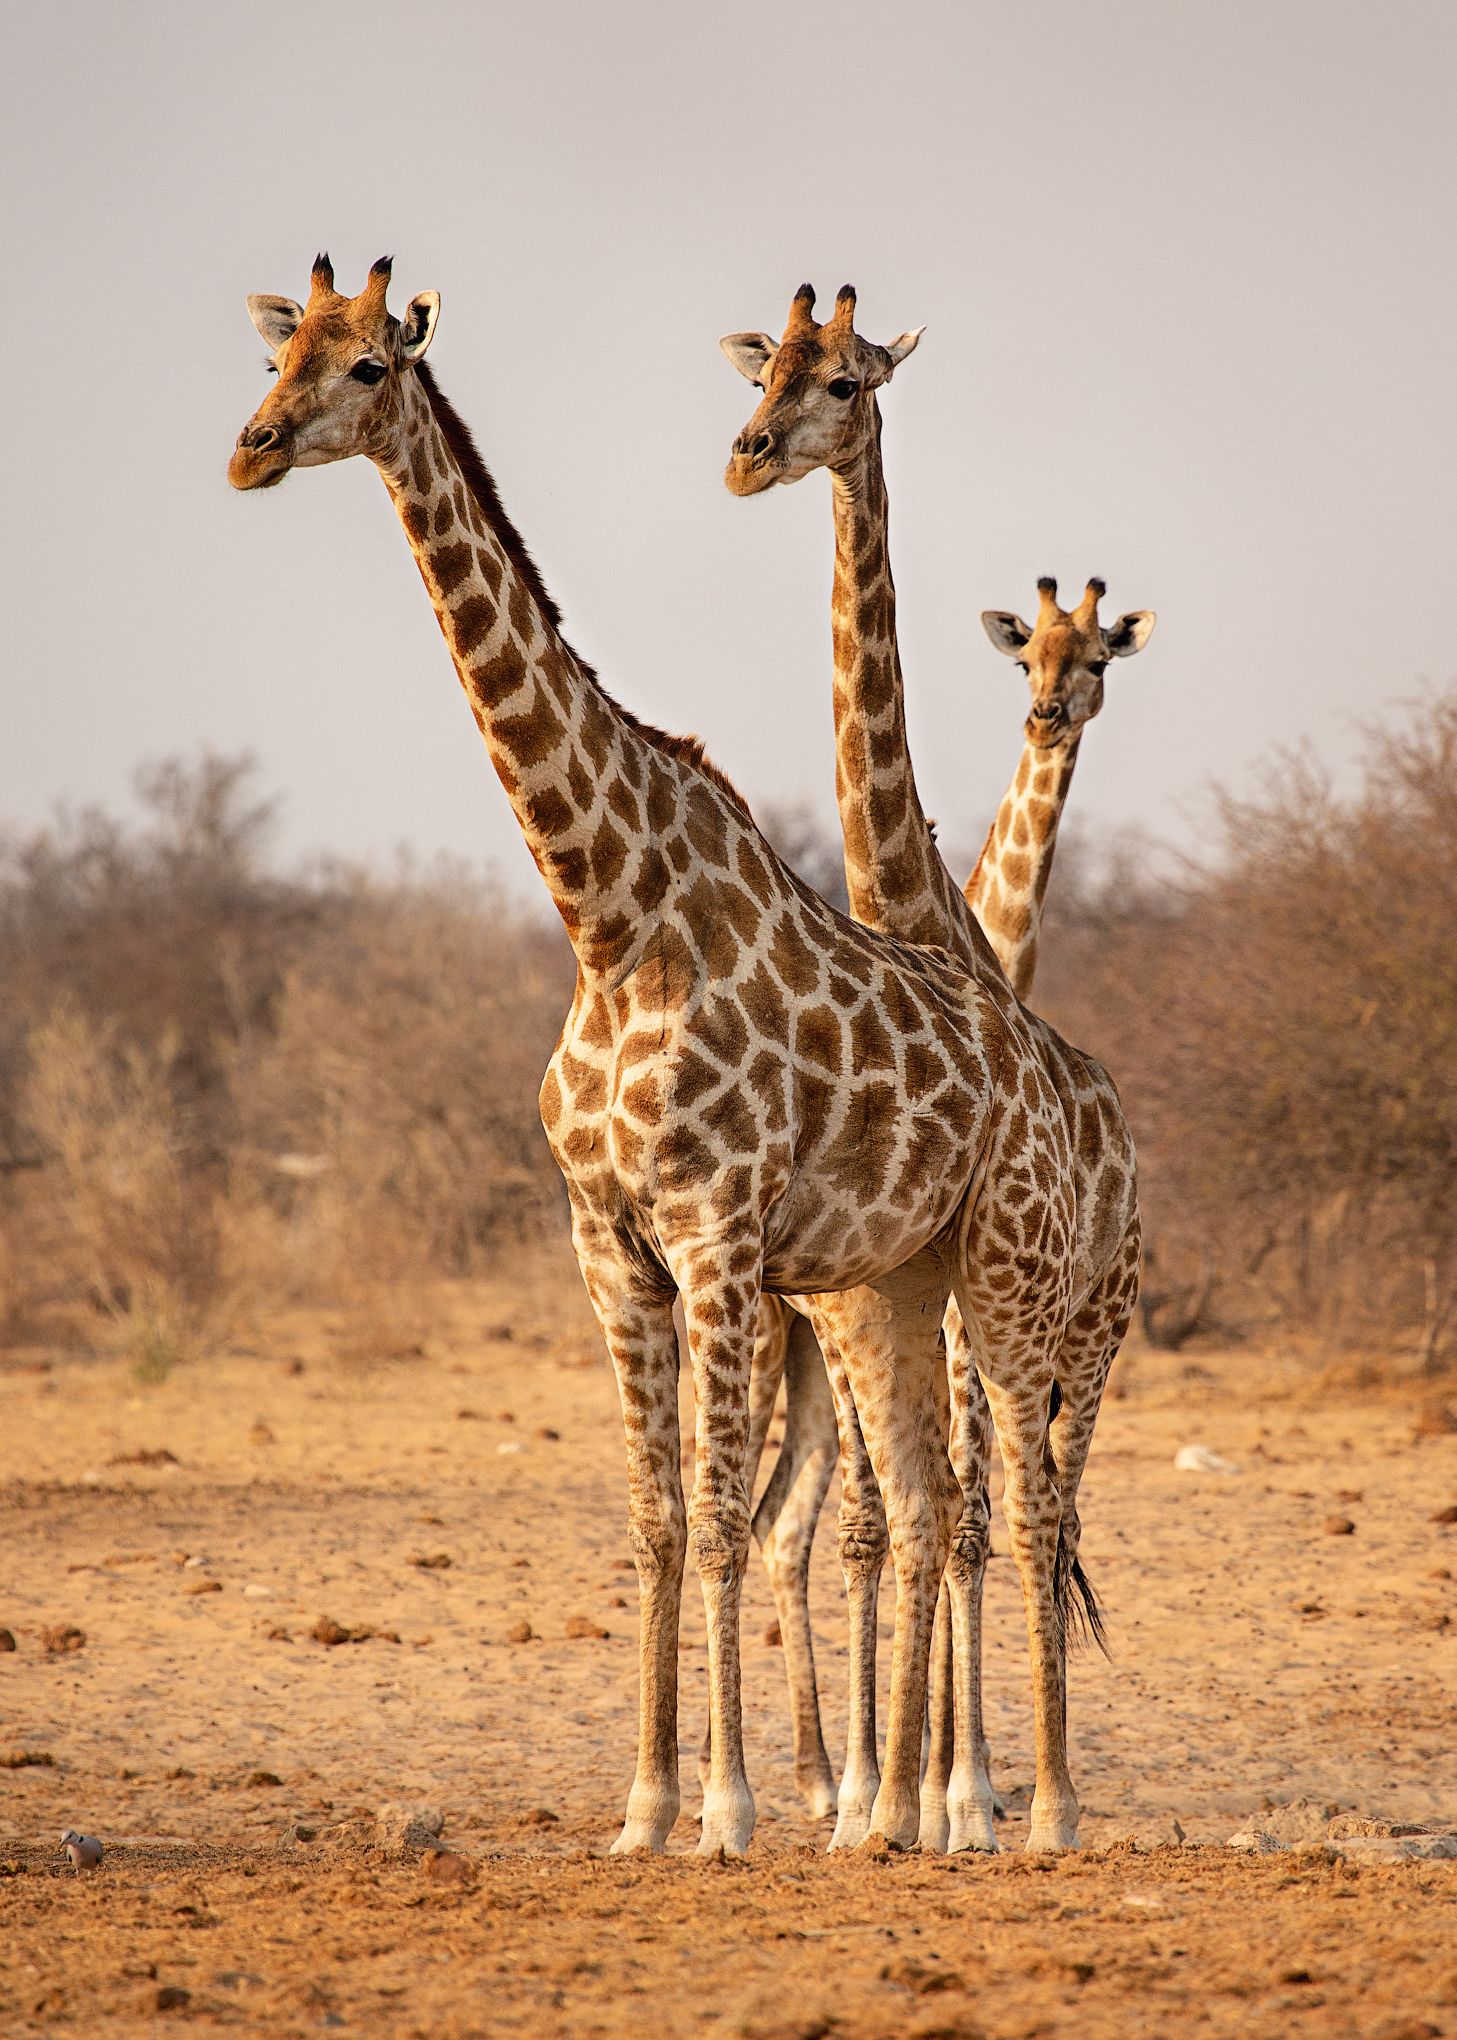 #Намибия #Этоша #жирафы #три #национальный парк #животные #Namibia #etosha #africa #animal #giraffe #Африка, Наталия Деркач